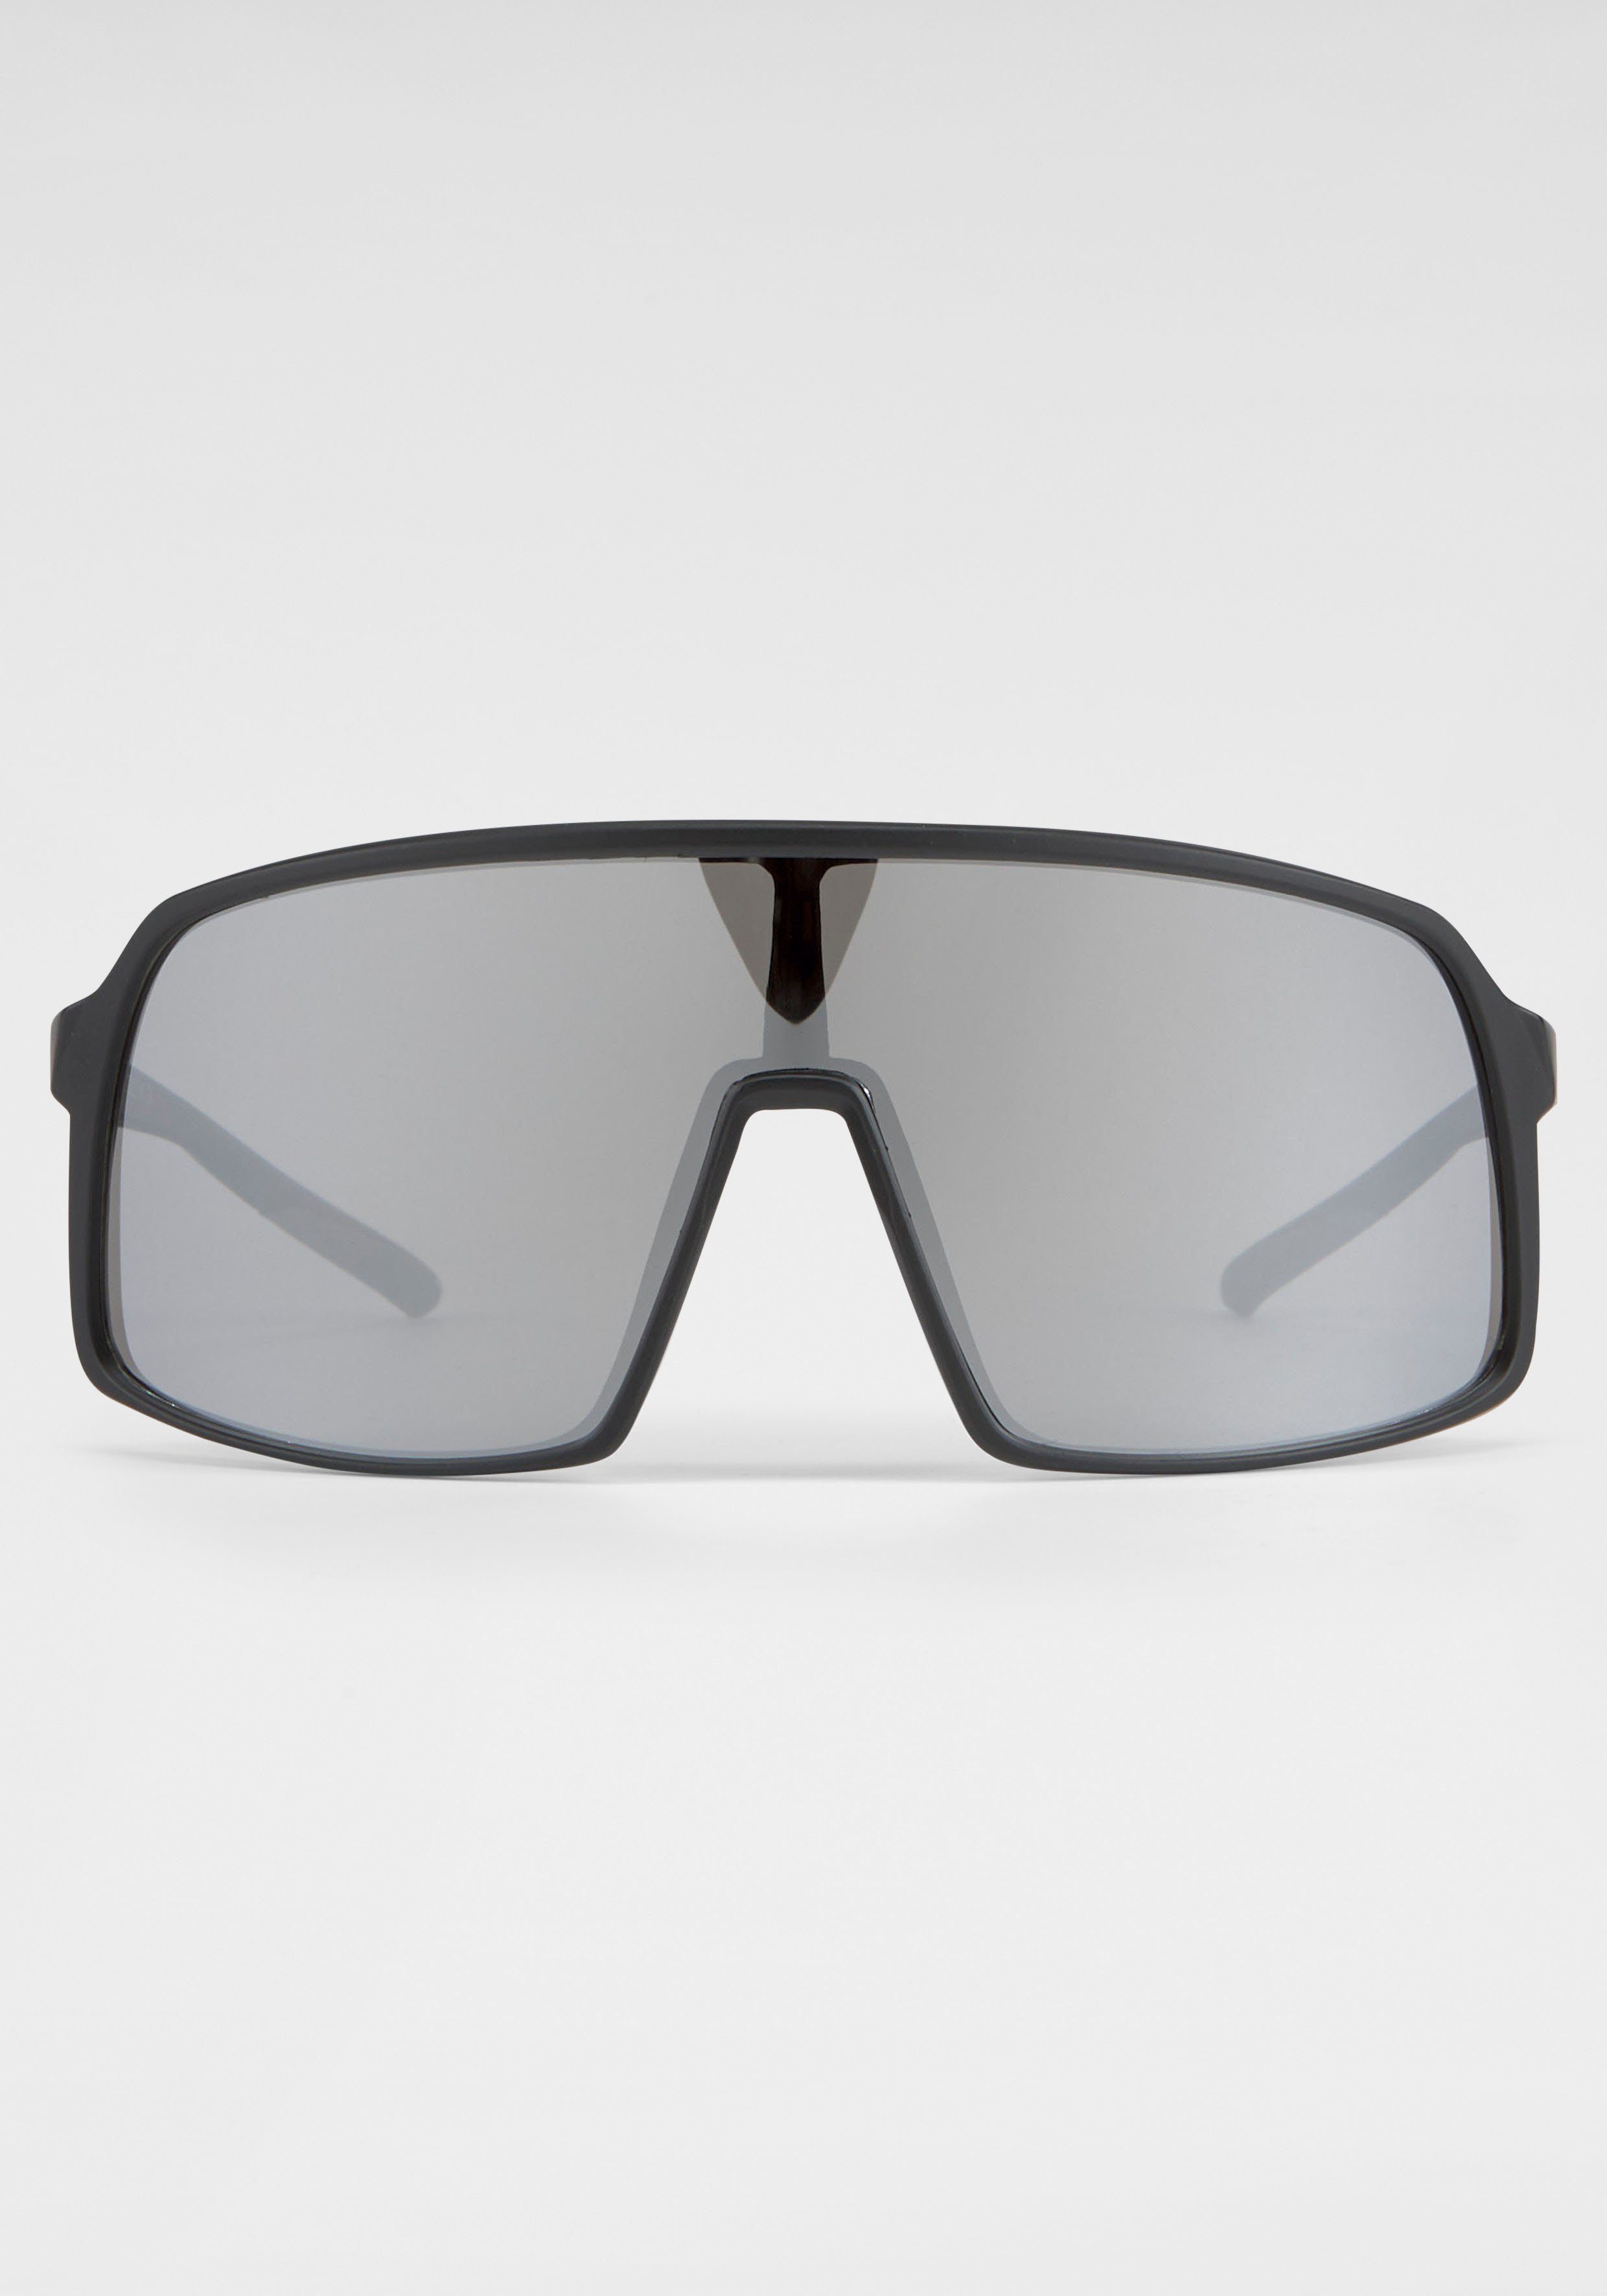 BACK IN BLACK Eyewear Sonnenbrille große Gläser schwarz-silber